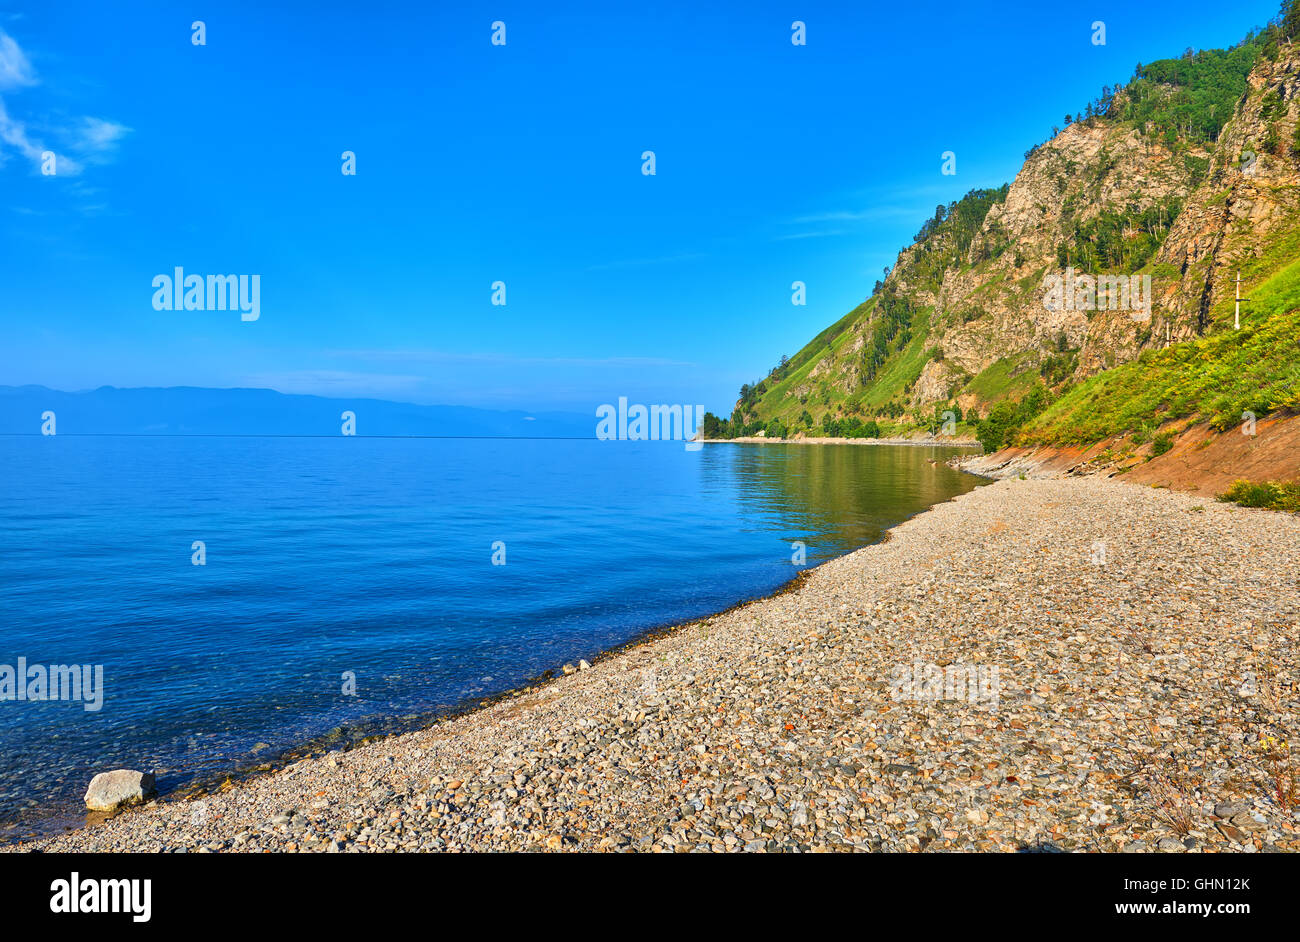 Des petits cailloux sur la rive du lac Baïkal . Juillet. La Sibérie orientale. La Russie Banque D'Images